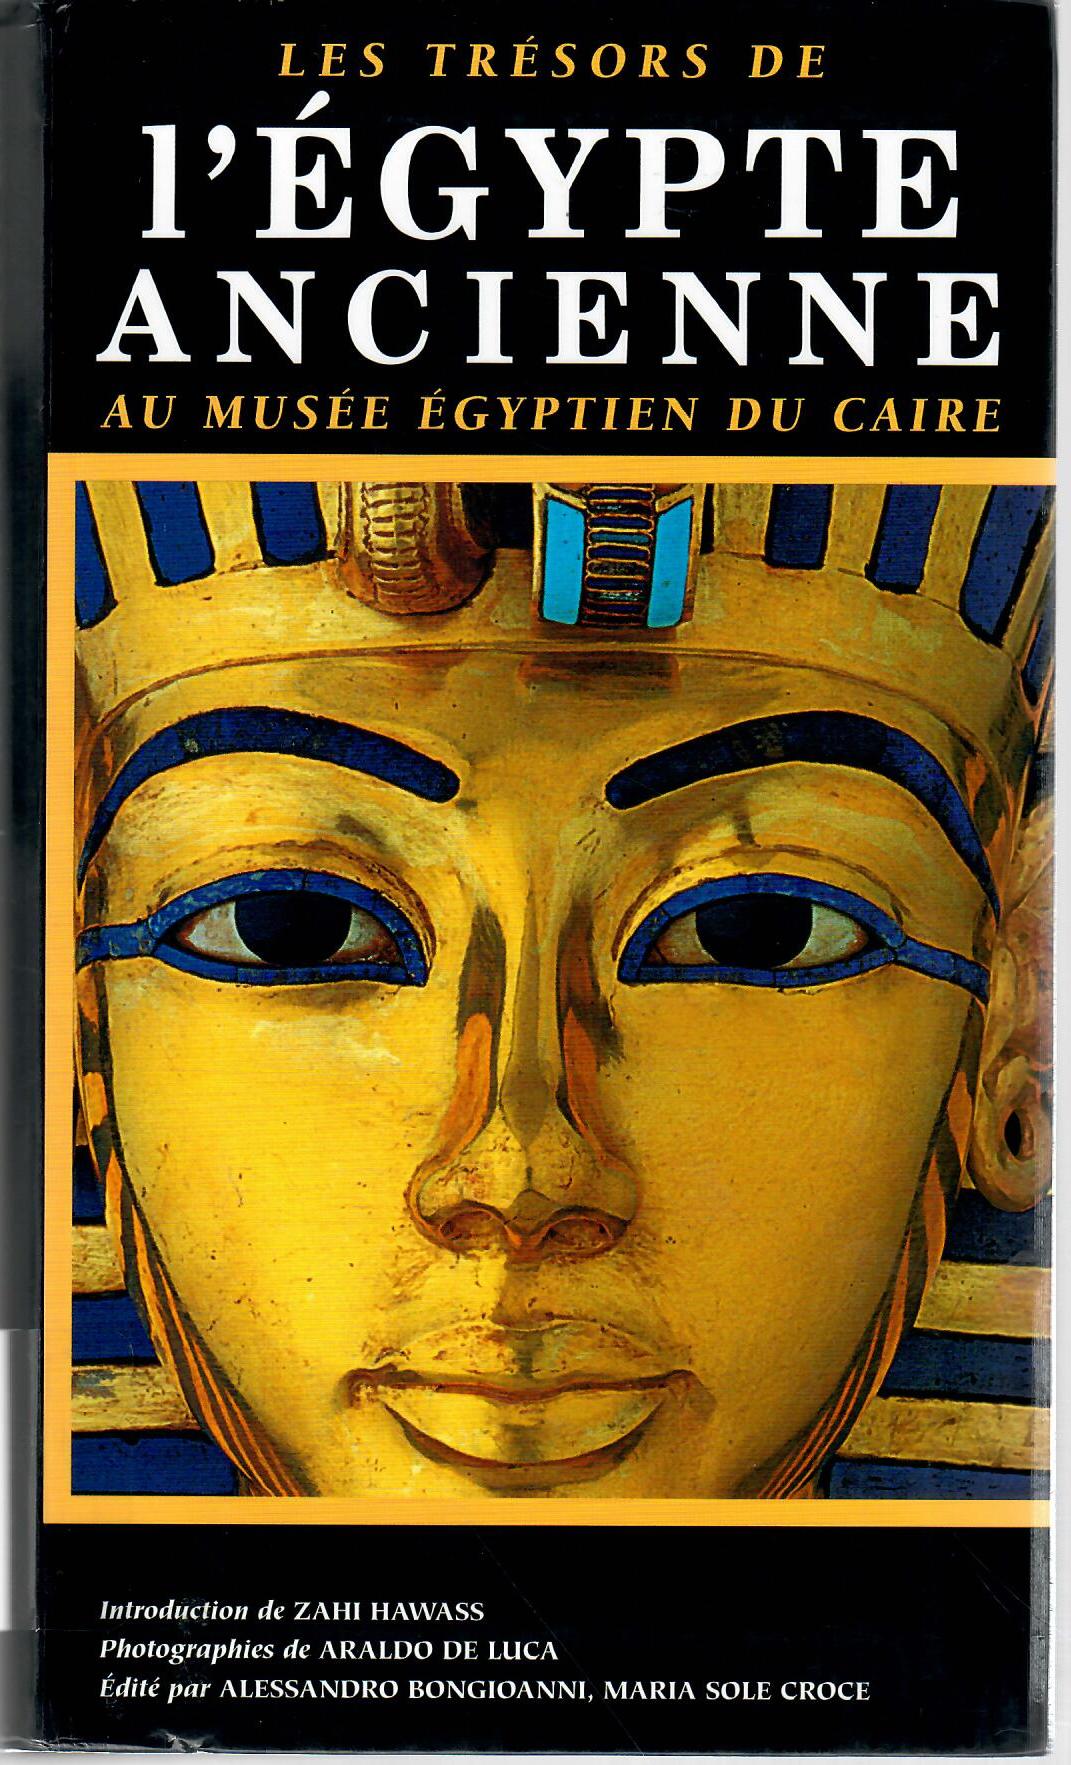 1’EGYPTE ANCIENNE AU MUSEE EGYPTIEN DU CAIRE